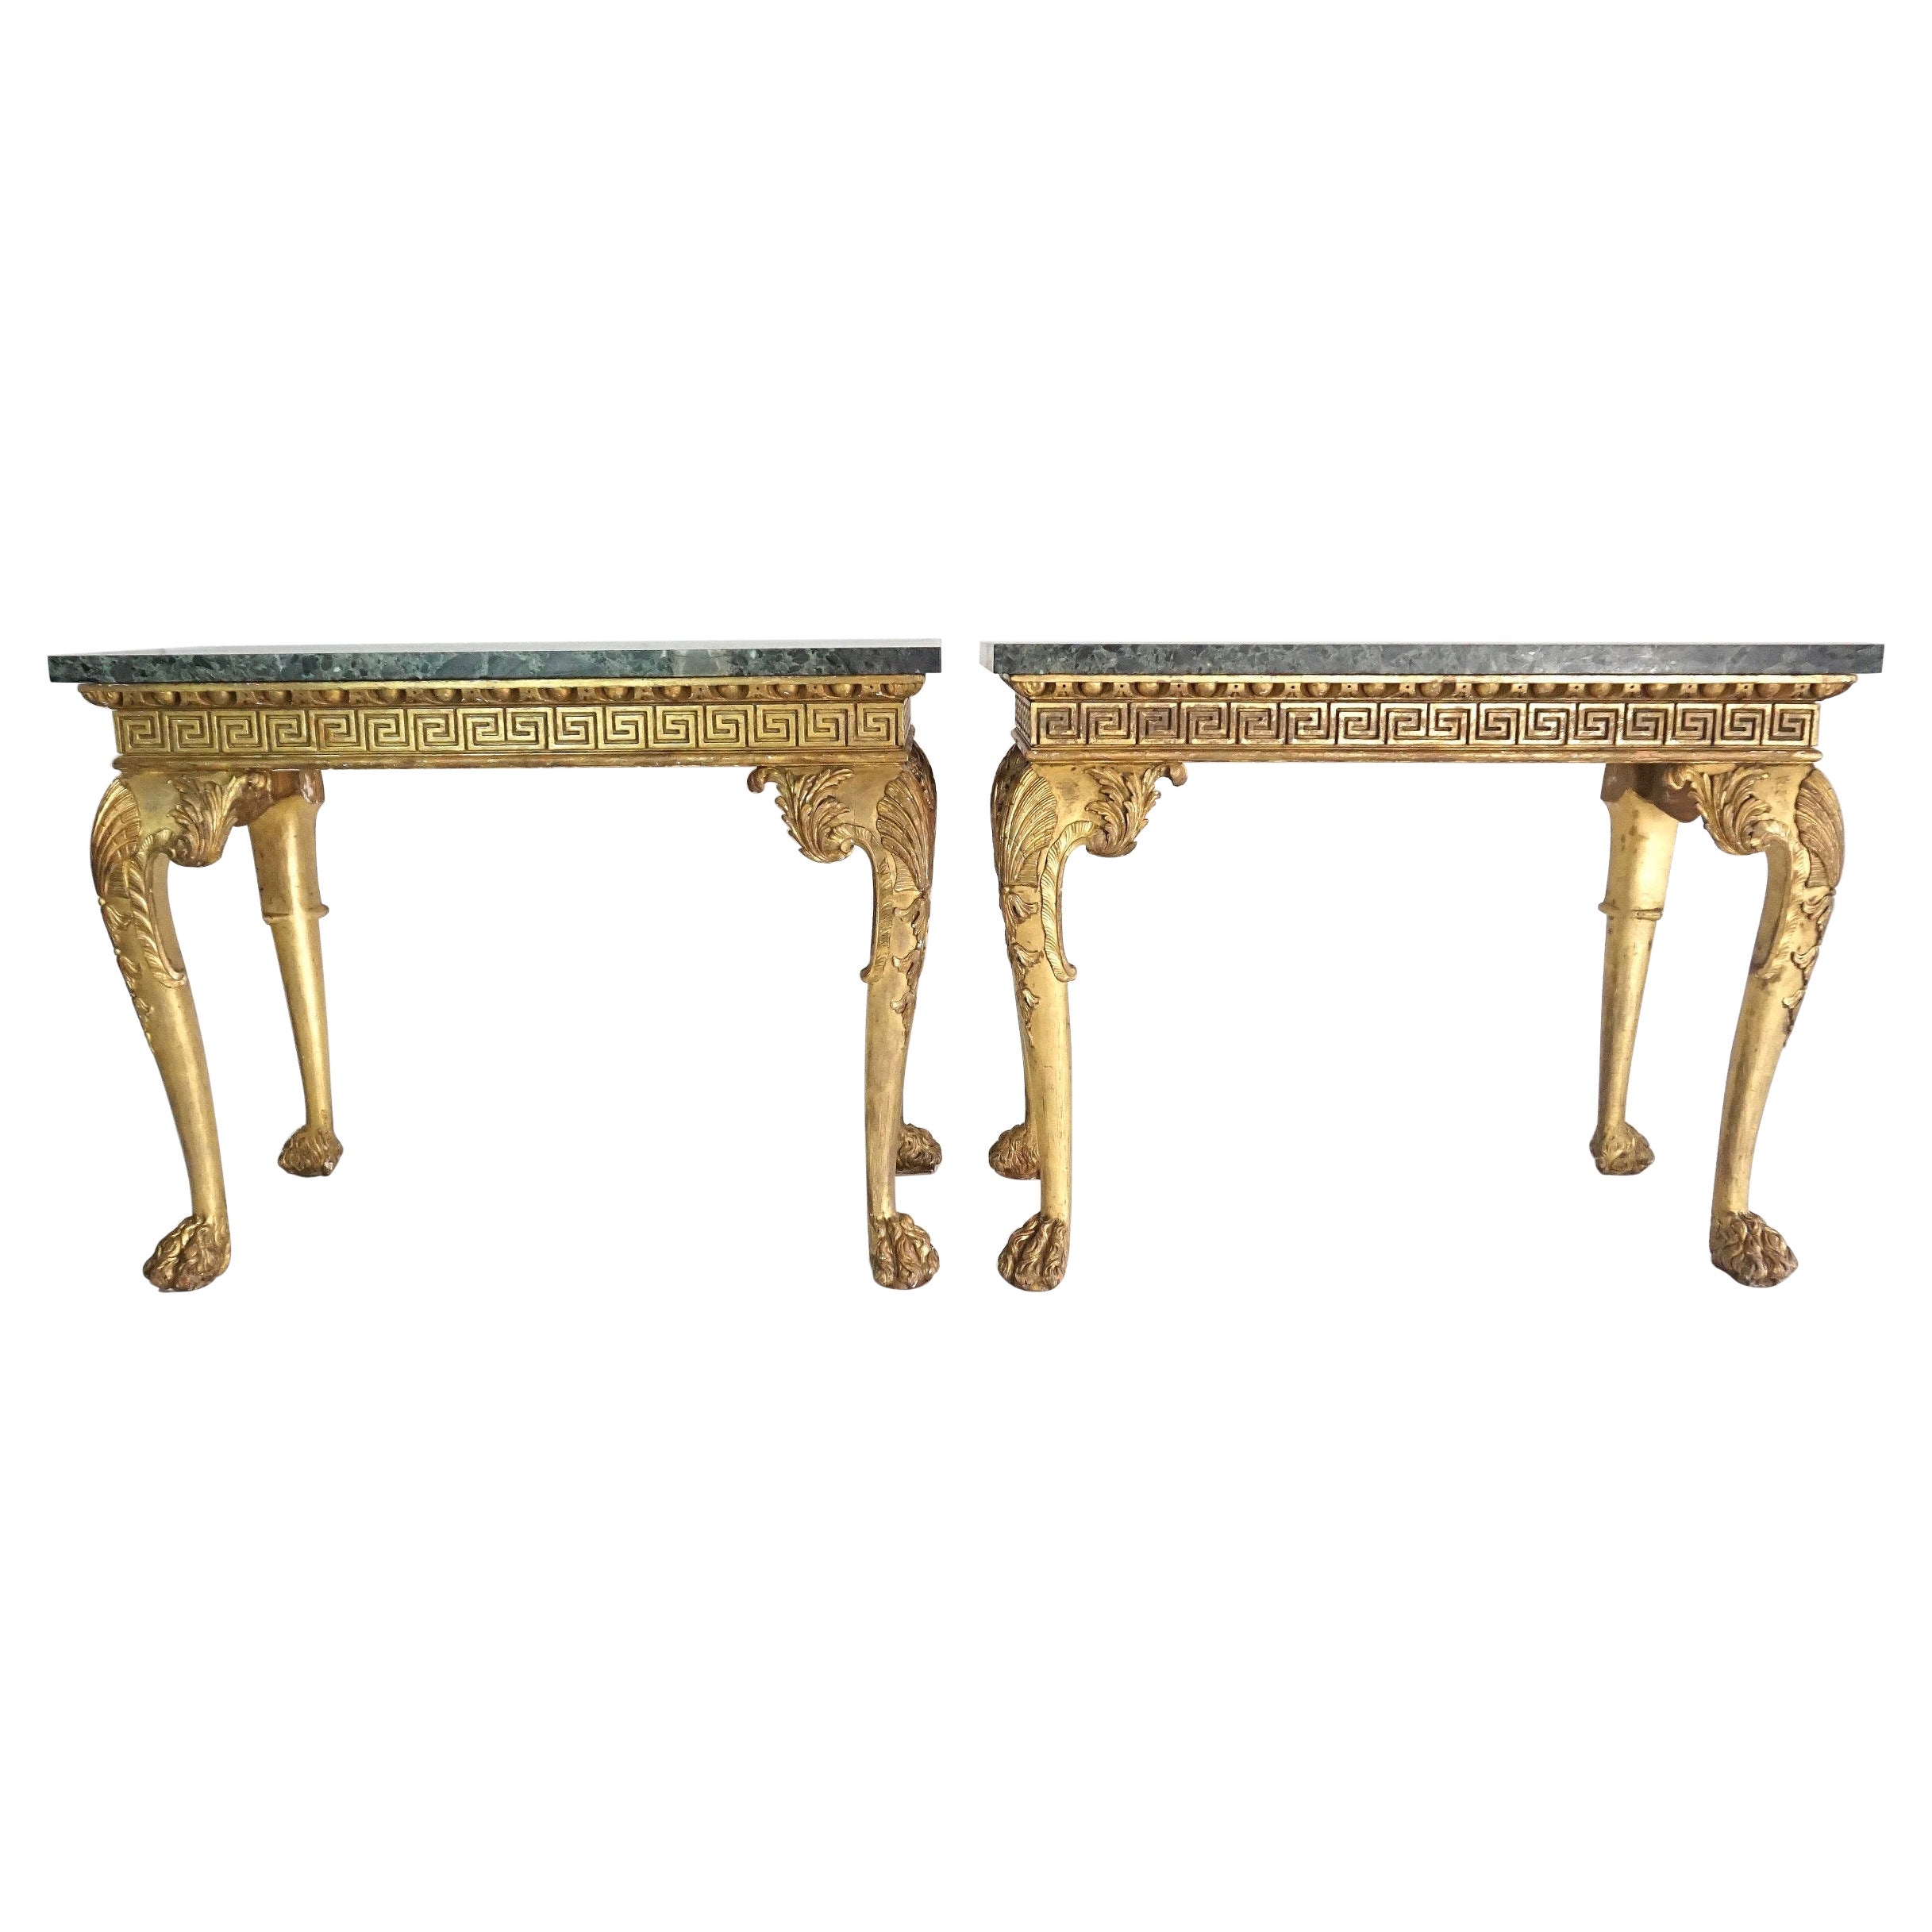 Tables d'appoint en bois doré de style Régence anglaise, à la manière de William Kent, datant d'environ 1815